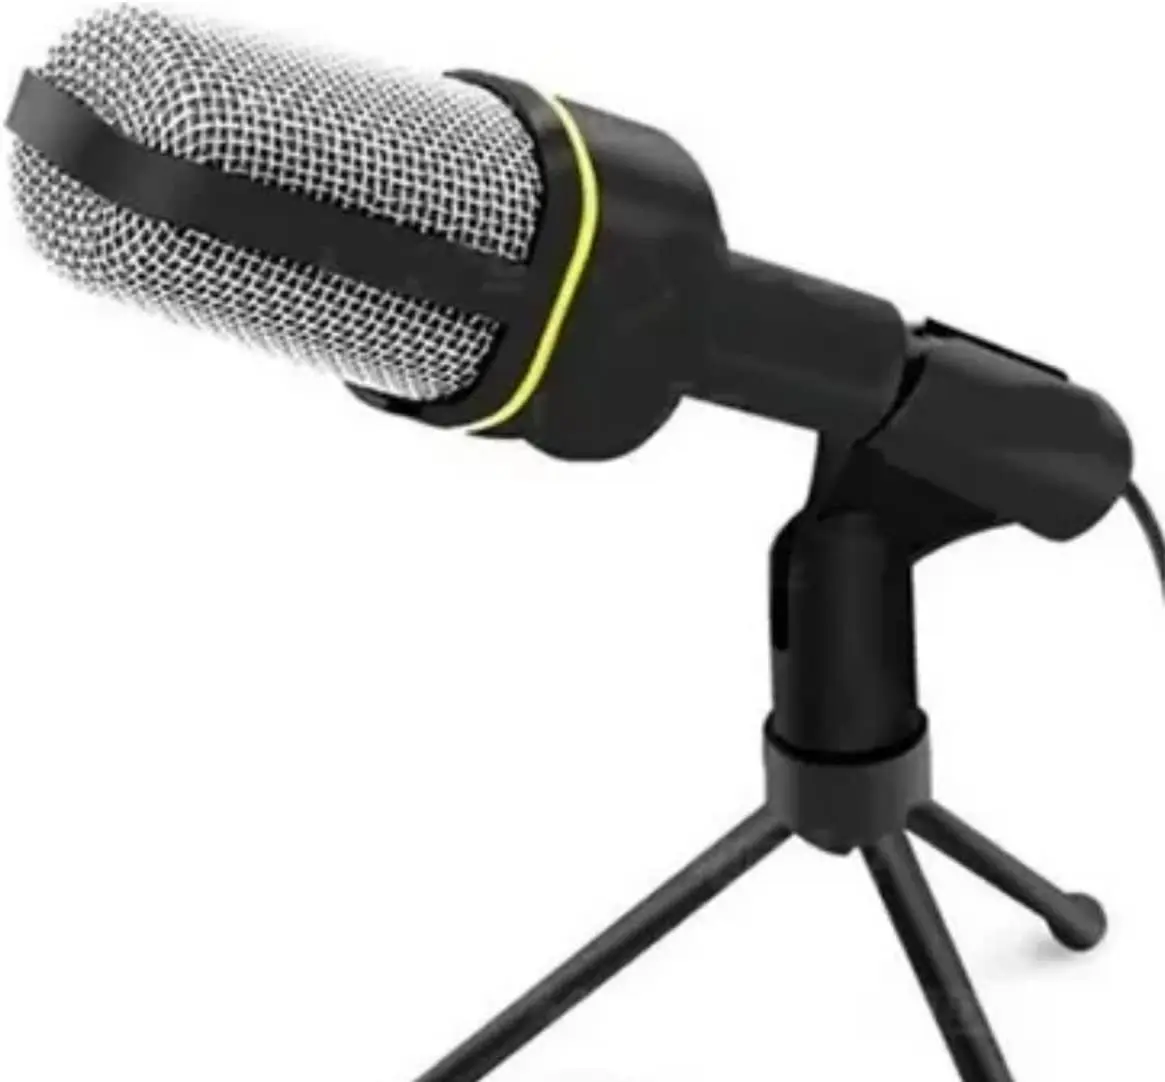 

Microfone Condensador Profissional De Mesa Com Tripé Para Gravação Em Estúdio PCs E Notebooks Portátil